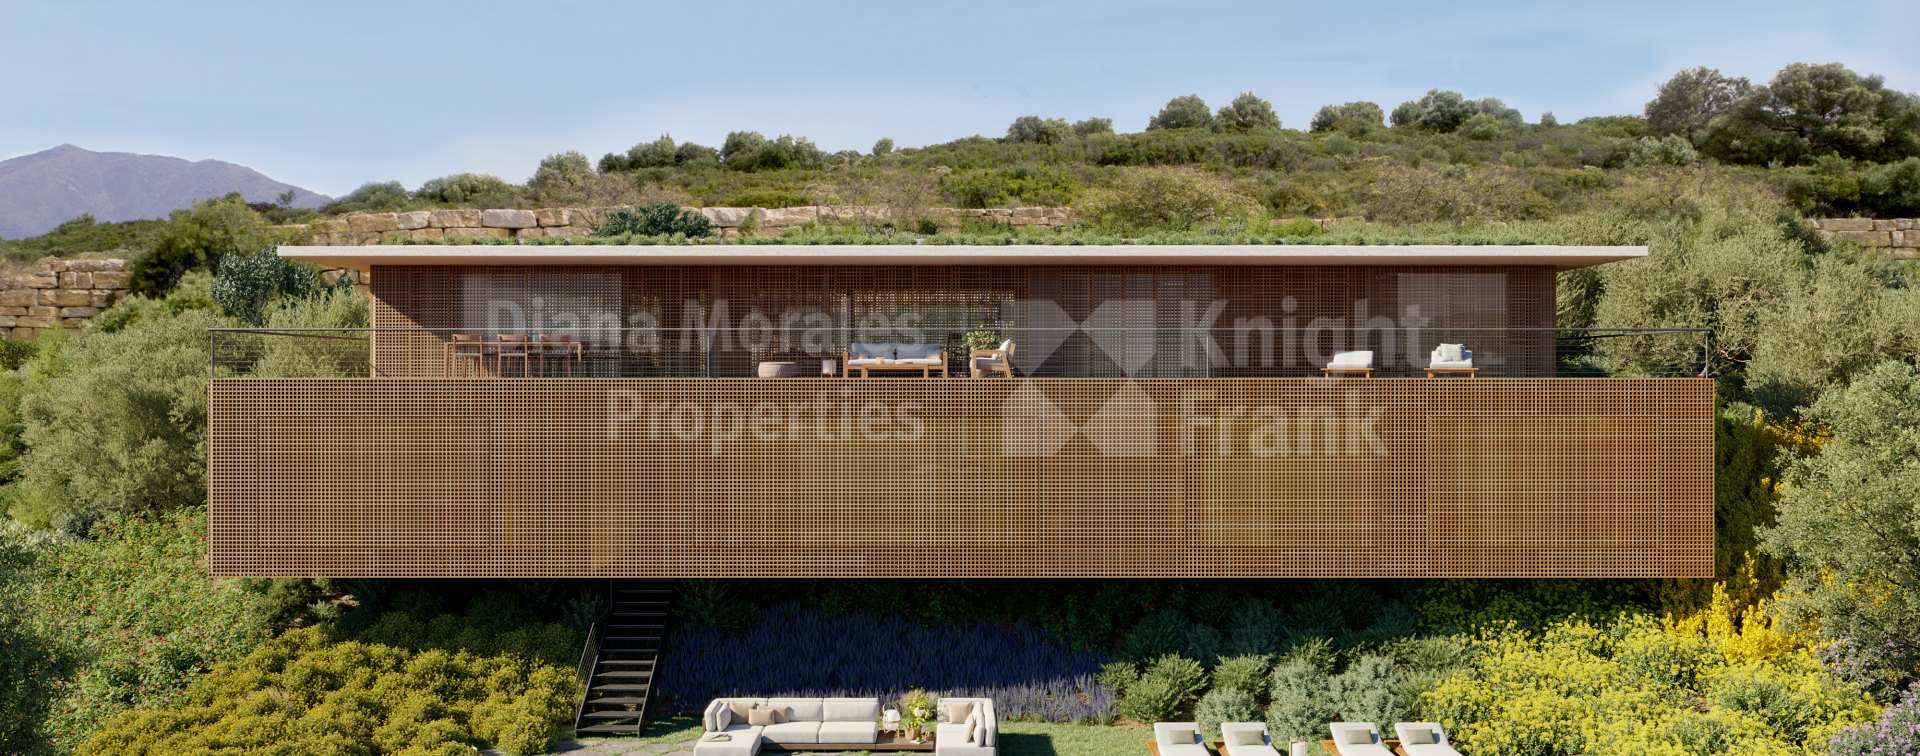 Finca Cortesin, Schlüsselfertiges Projekt für eine exquisit gestaltete Villa in einer luxuriösen Wohnanlage